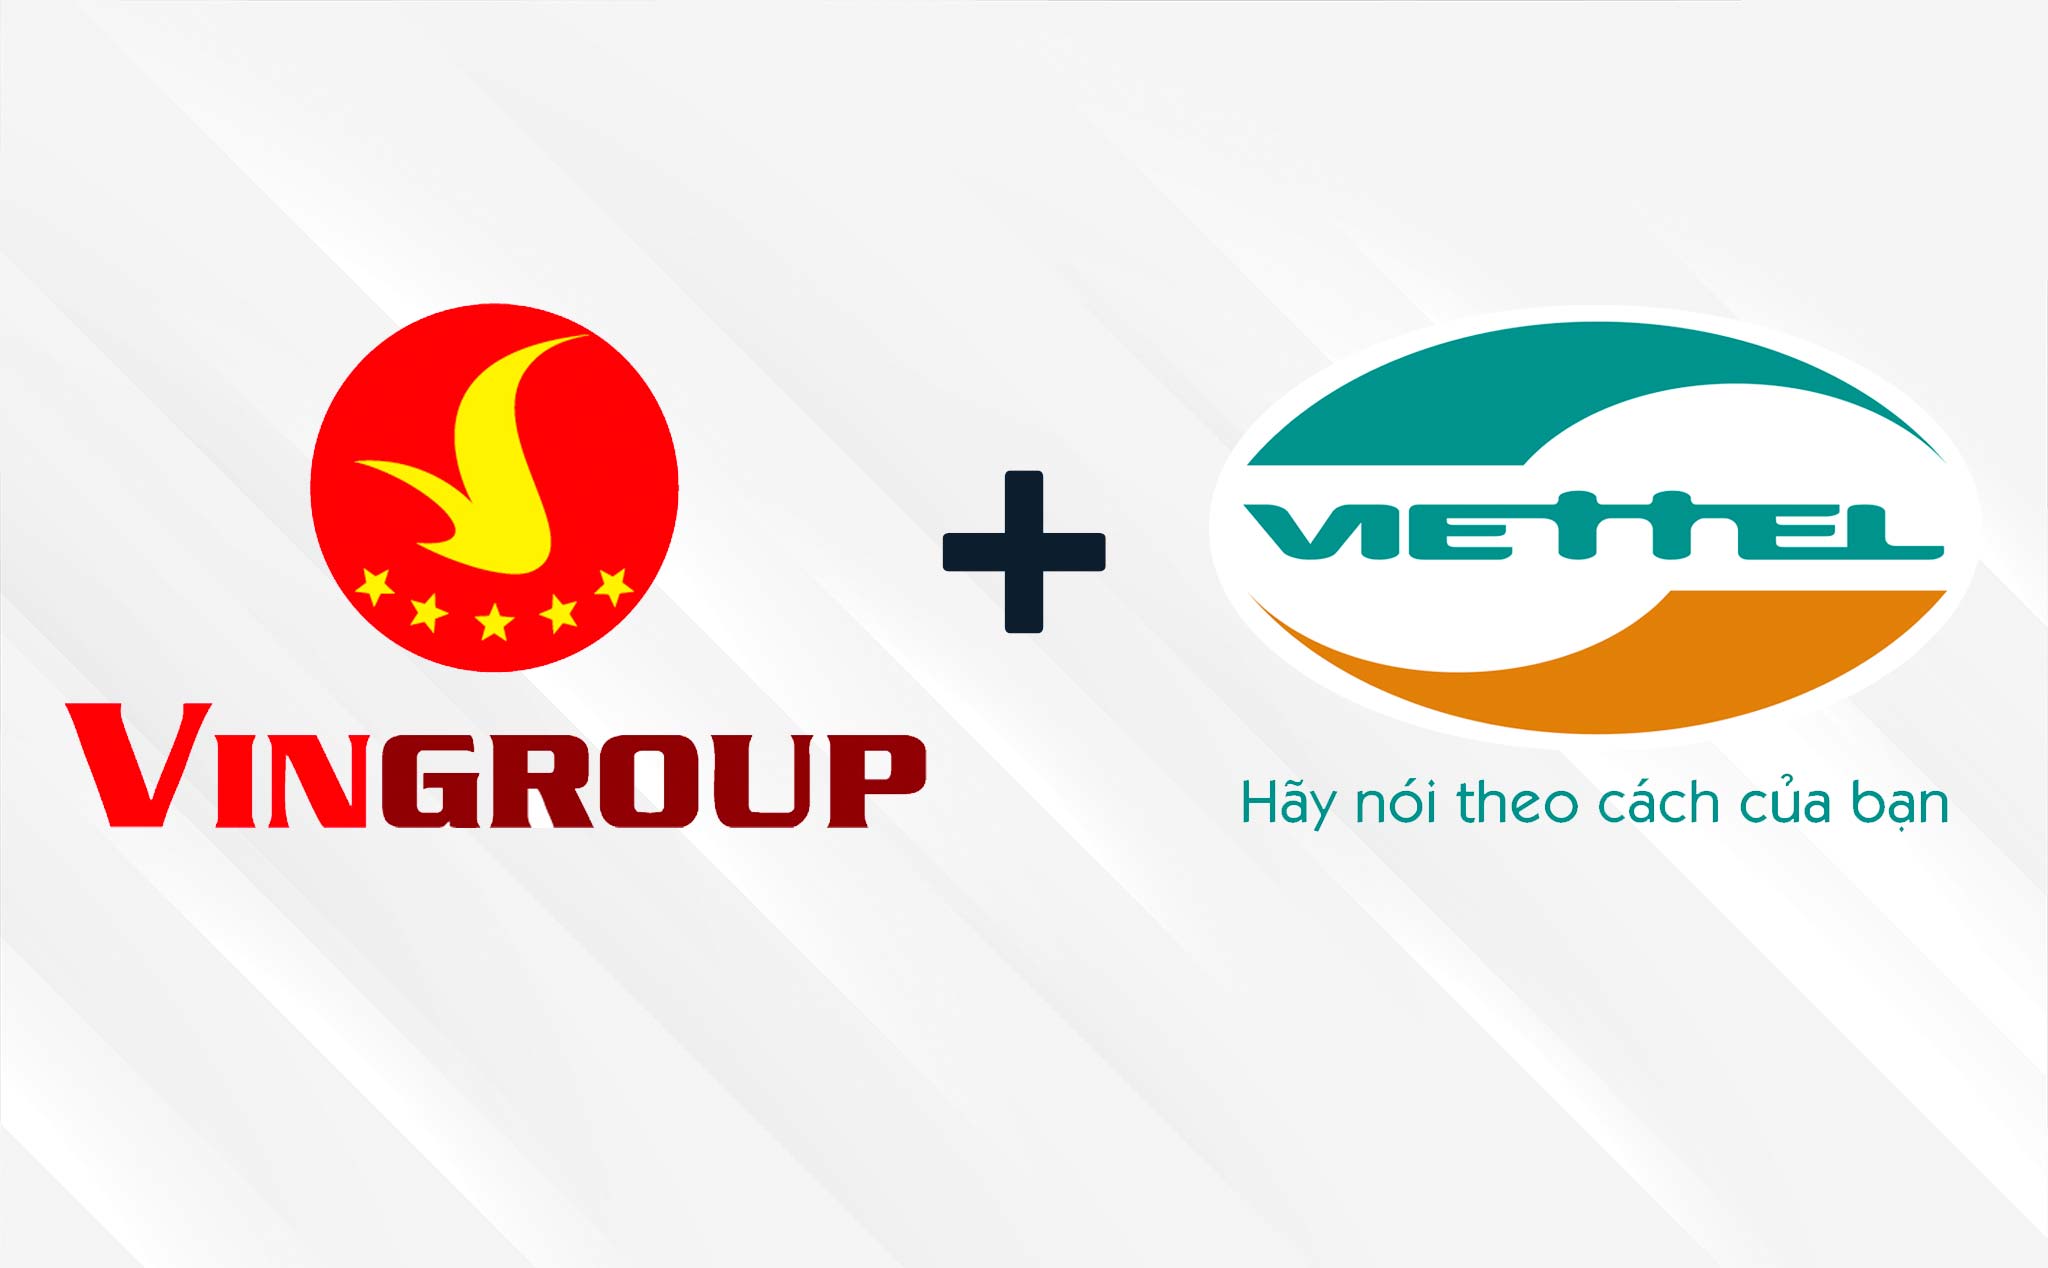 VinGroup ký thoả thuận với Viettel: sẽ có trạm sạc & đổi pin xe VinFast tại bưu cục Viettel